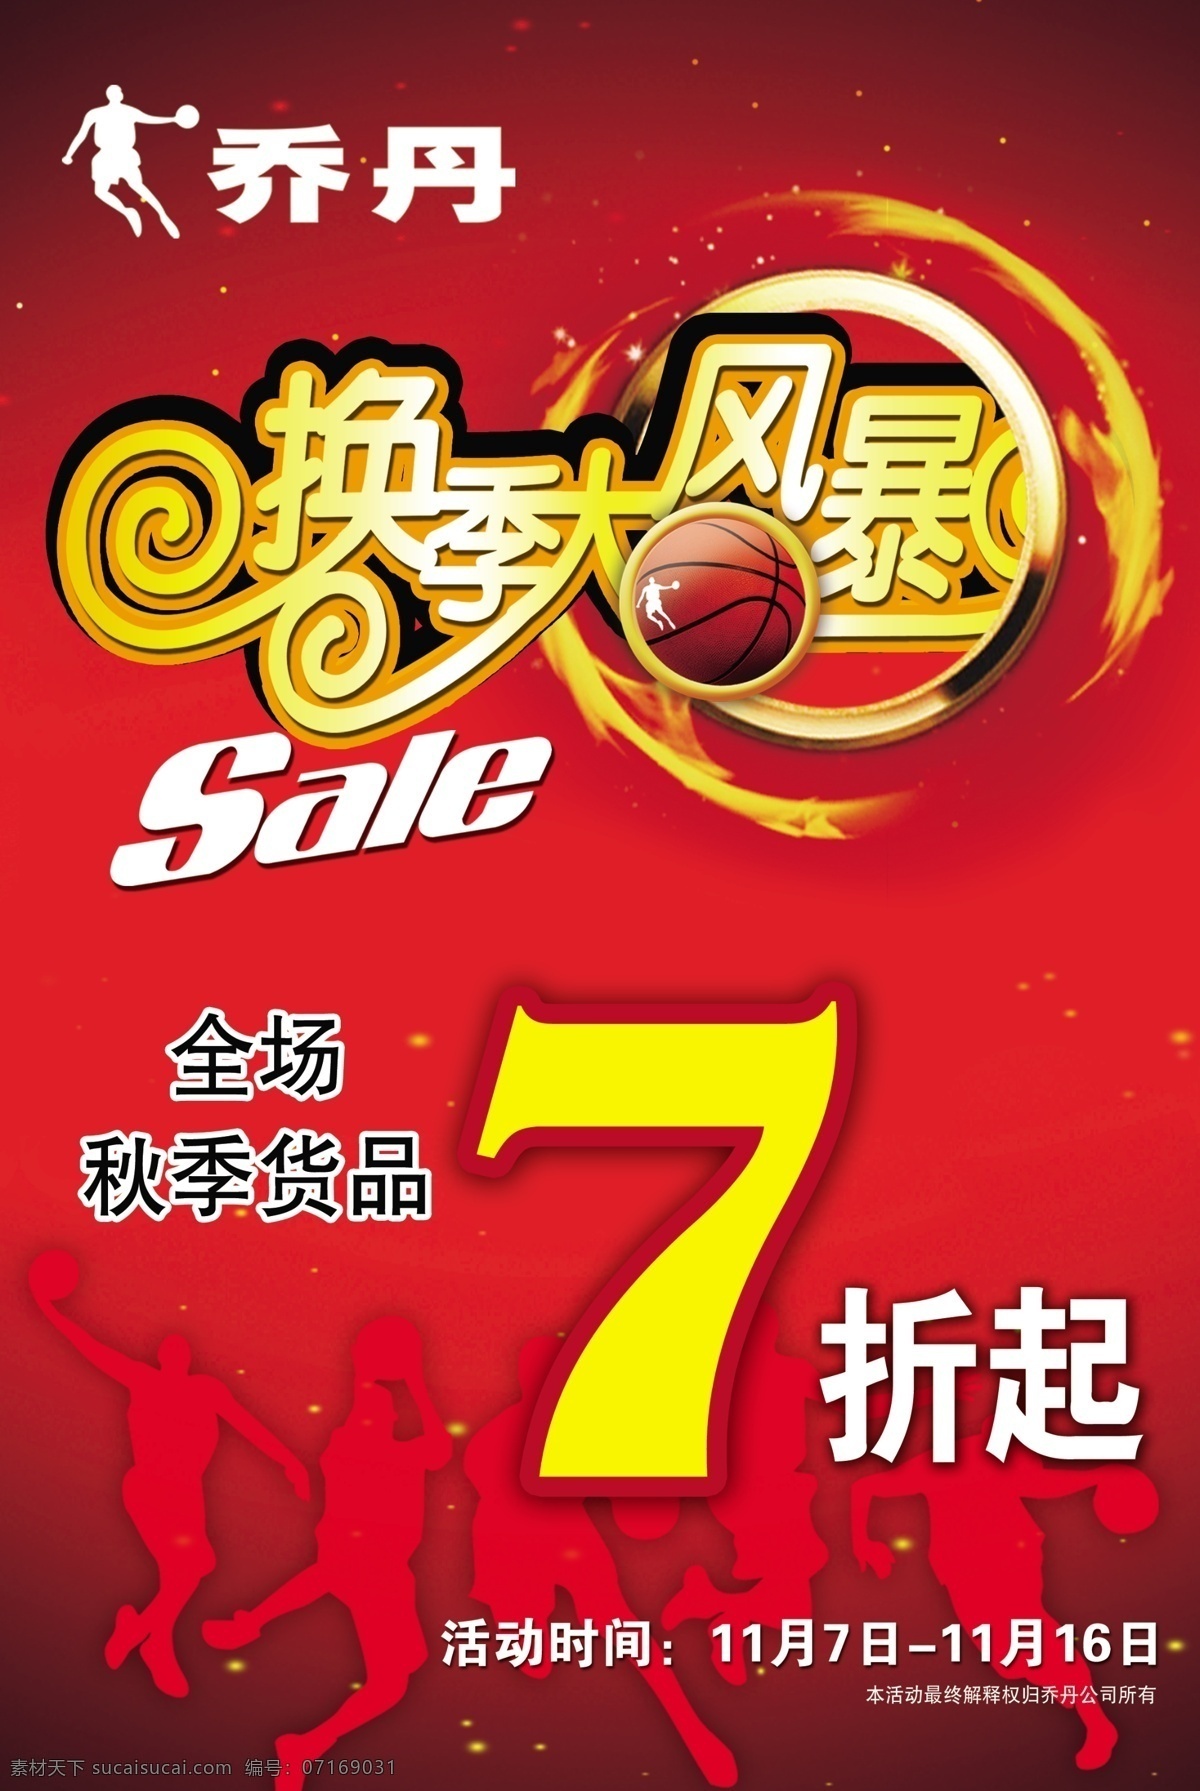 乔丹 公司 促销 广告 运动素材 红色背景 星星 艺术字体 篮球 风暴素材 金色 促销广告模版 广告设计模板 源文件